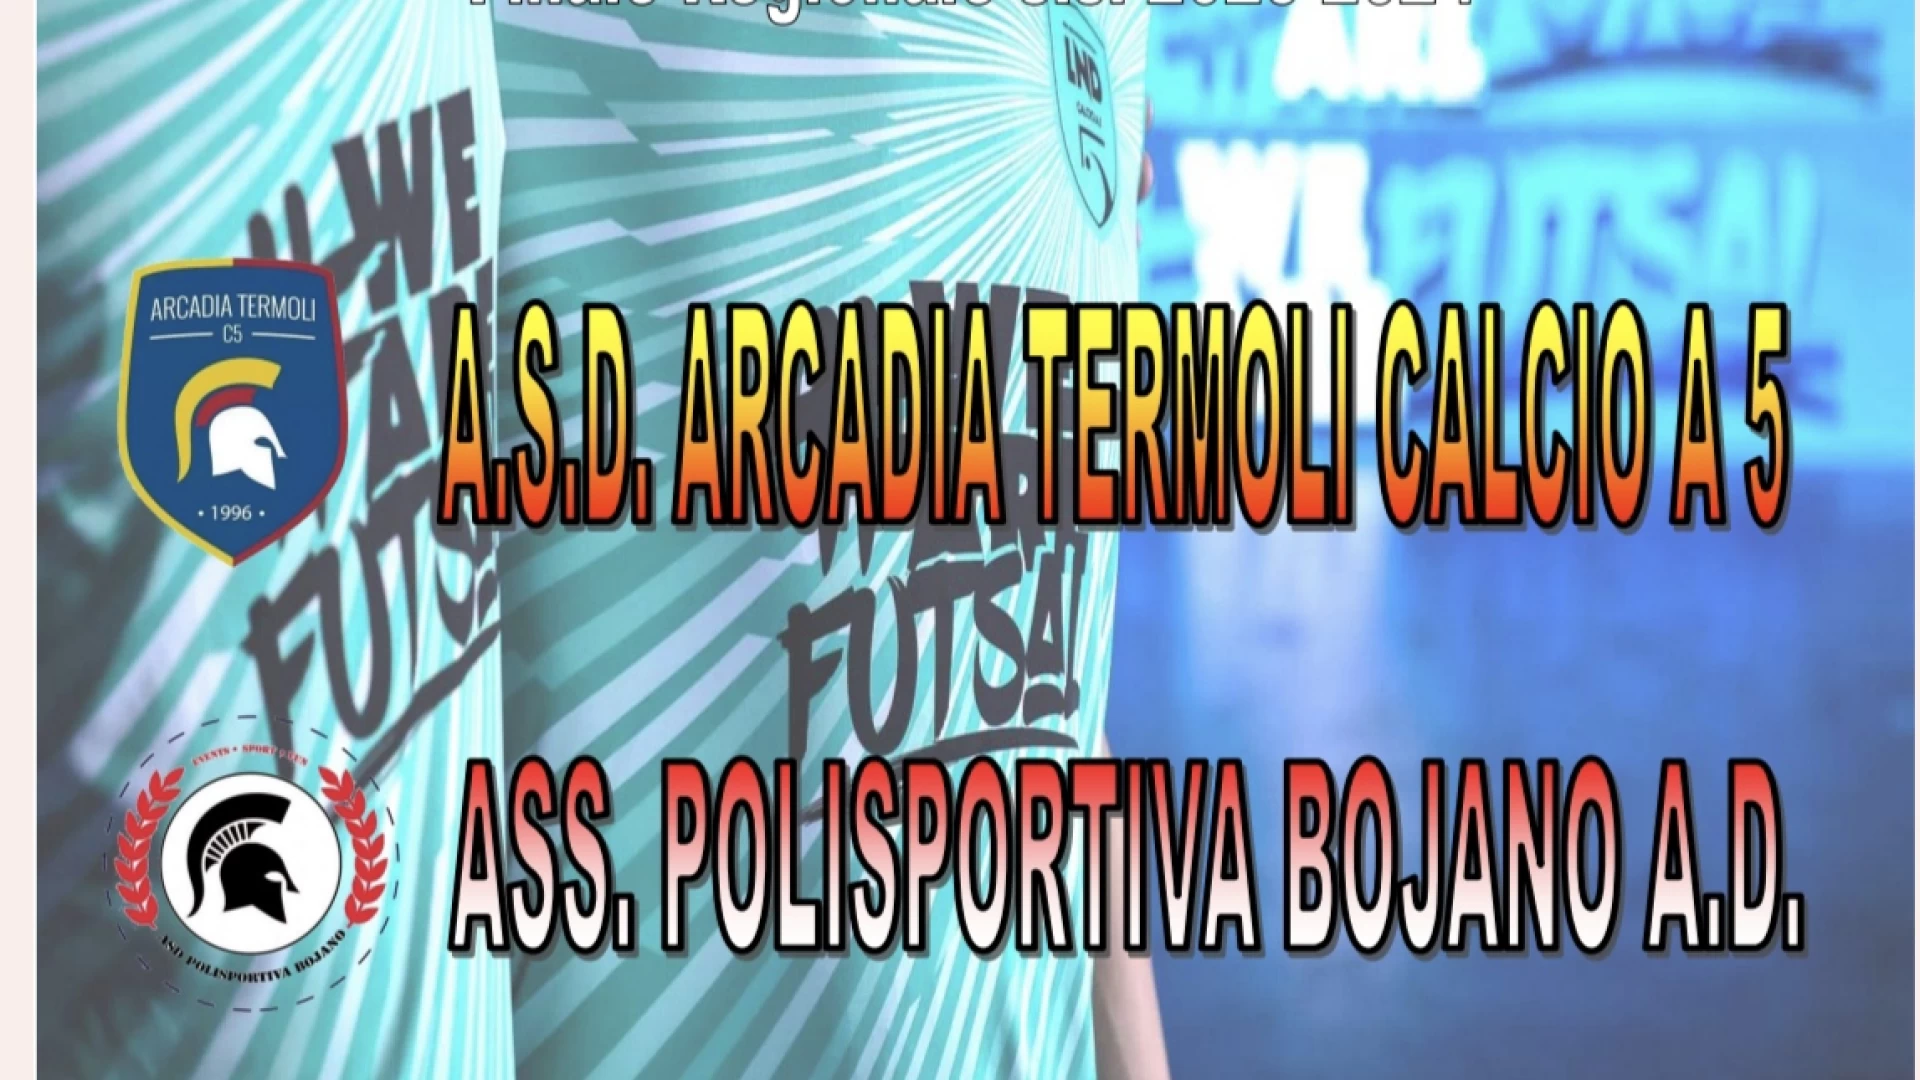 Coppa Italia dilettanti calcio a 5: domenica la finale tra Arcadia Termoli e Bojano.